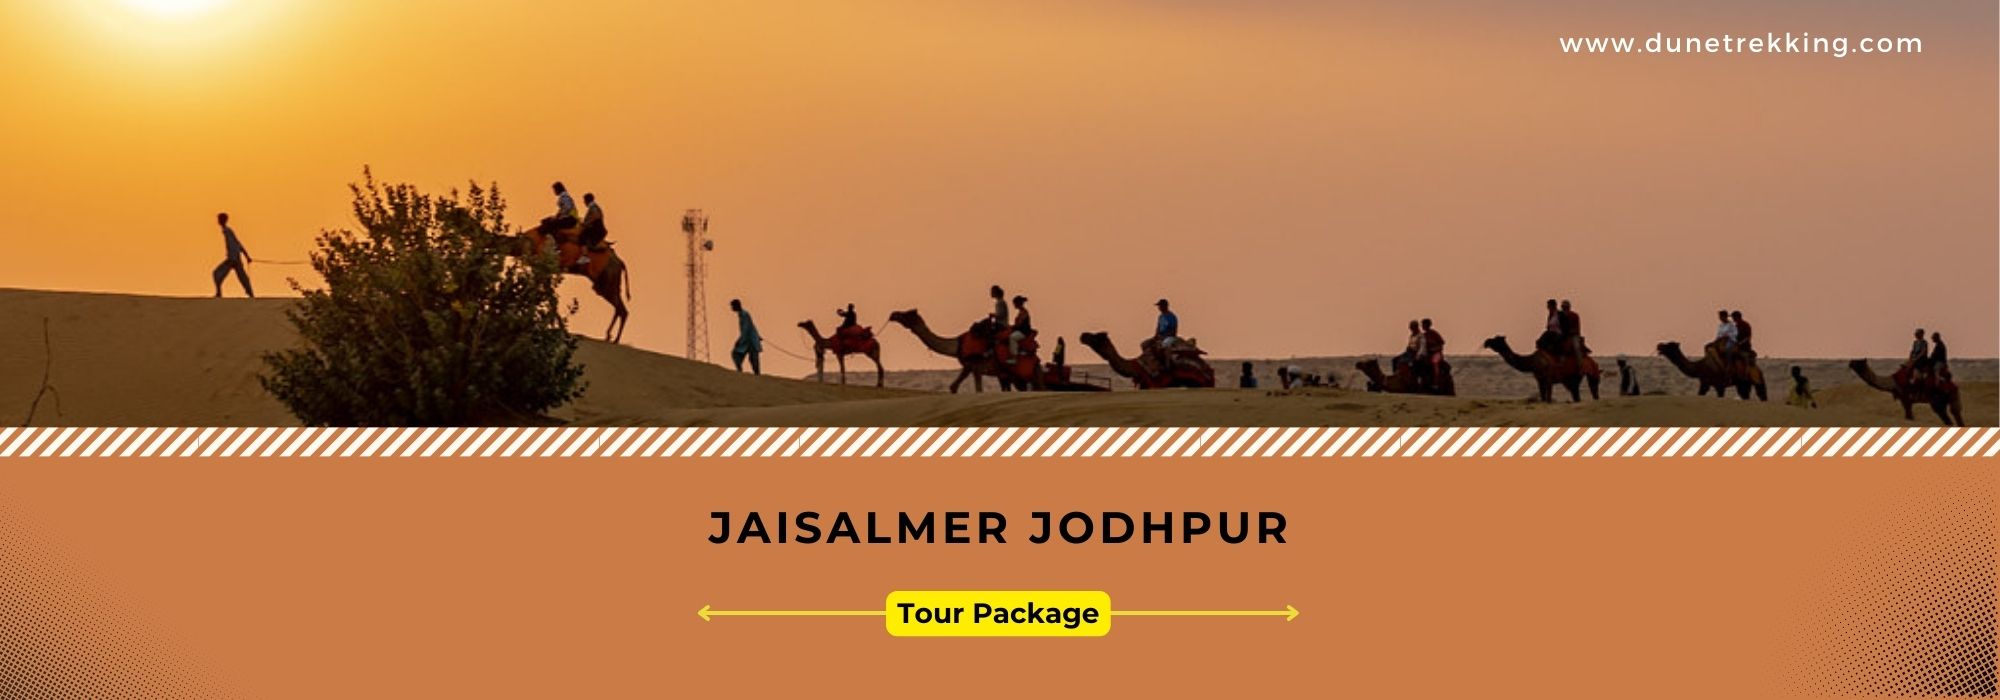 Jaisalmer Jodhpur Tour Package- dunetrekking.com